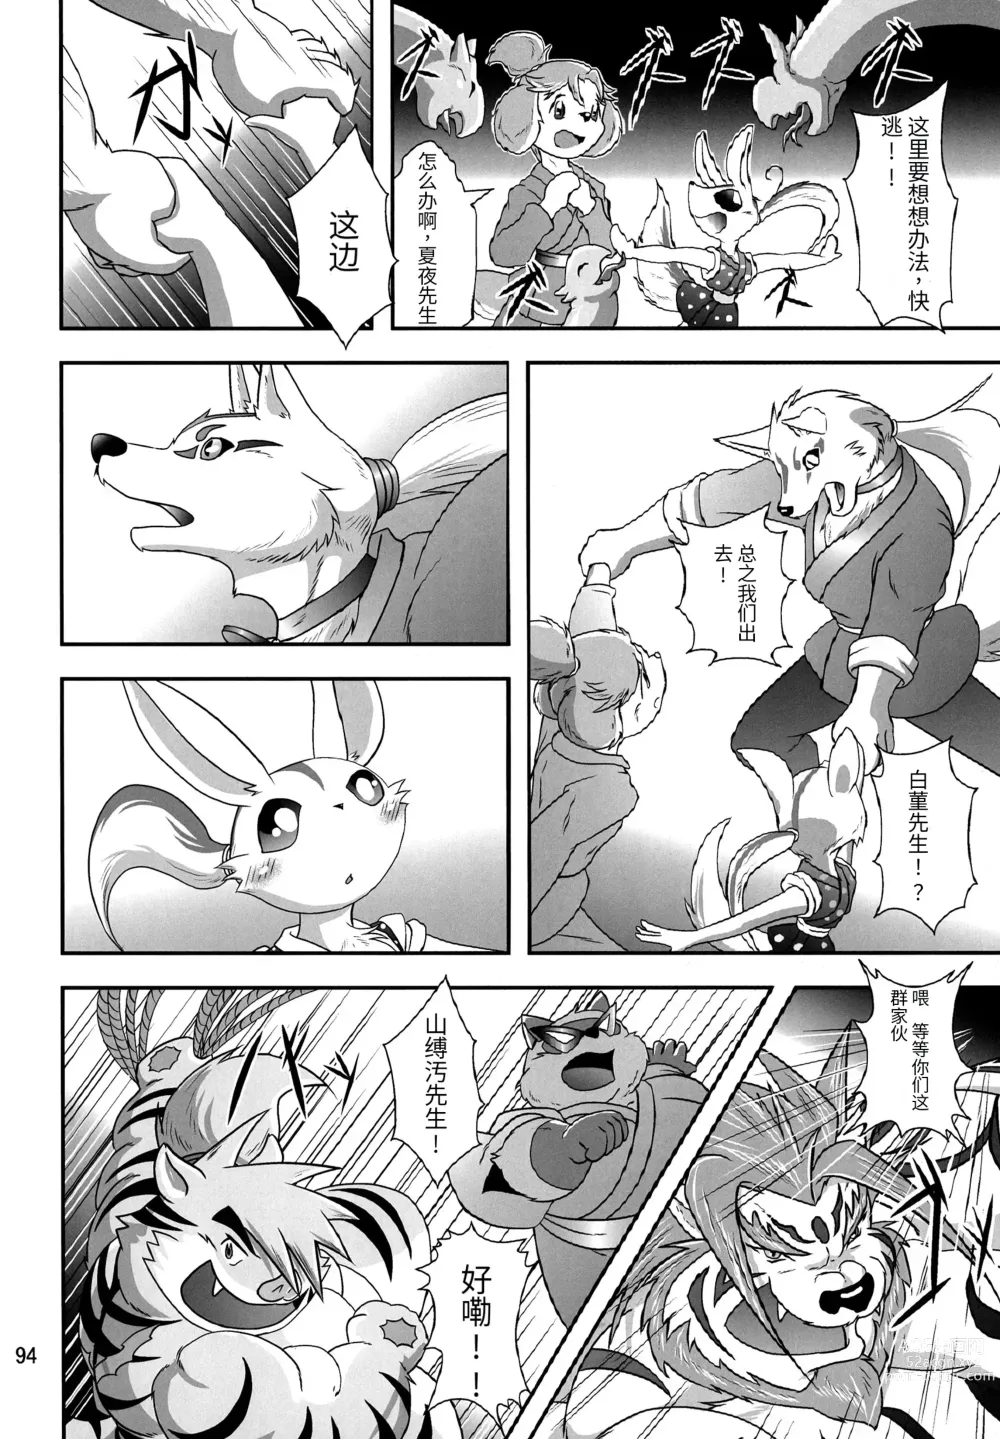 Page 91 of doujinshi Kemono no Roukaku - Utage